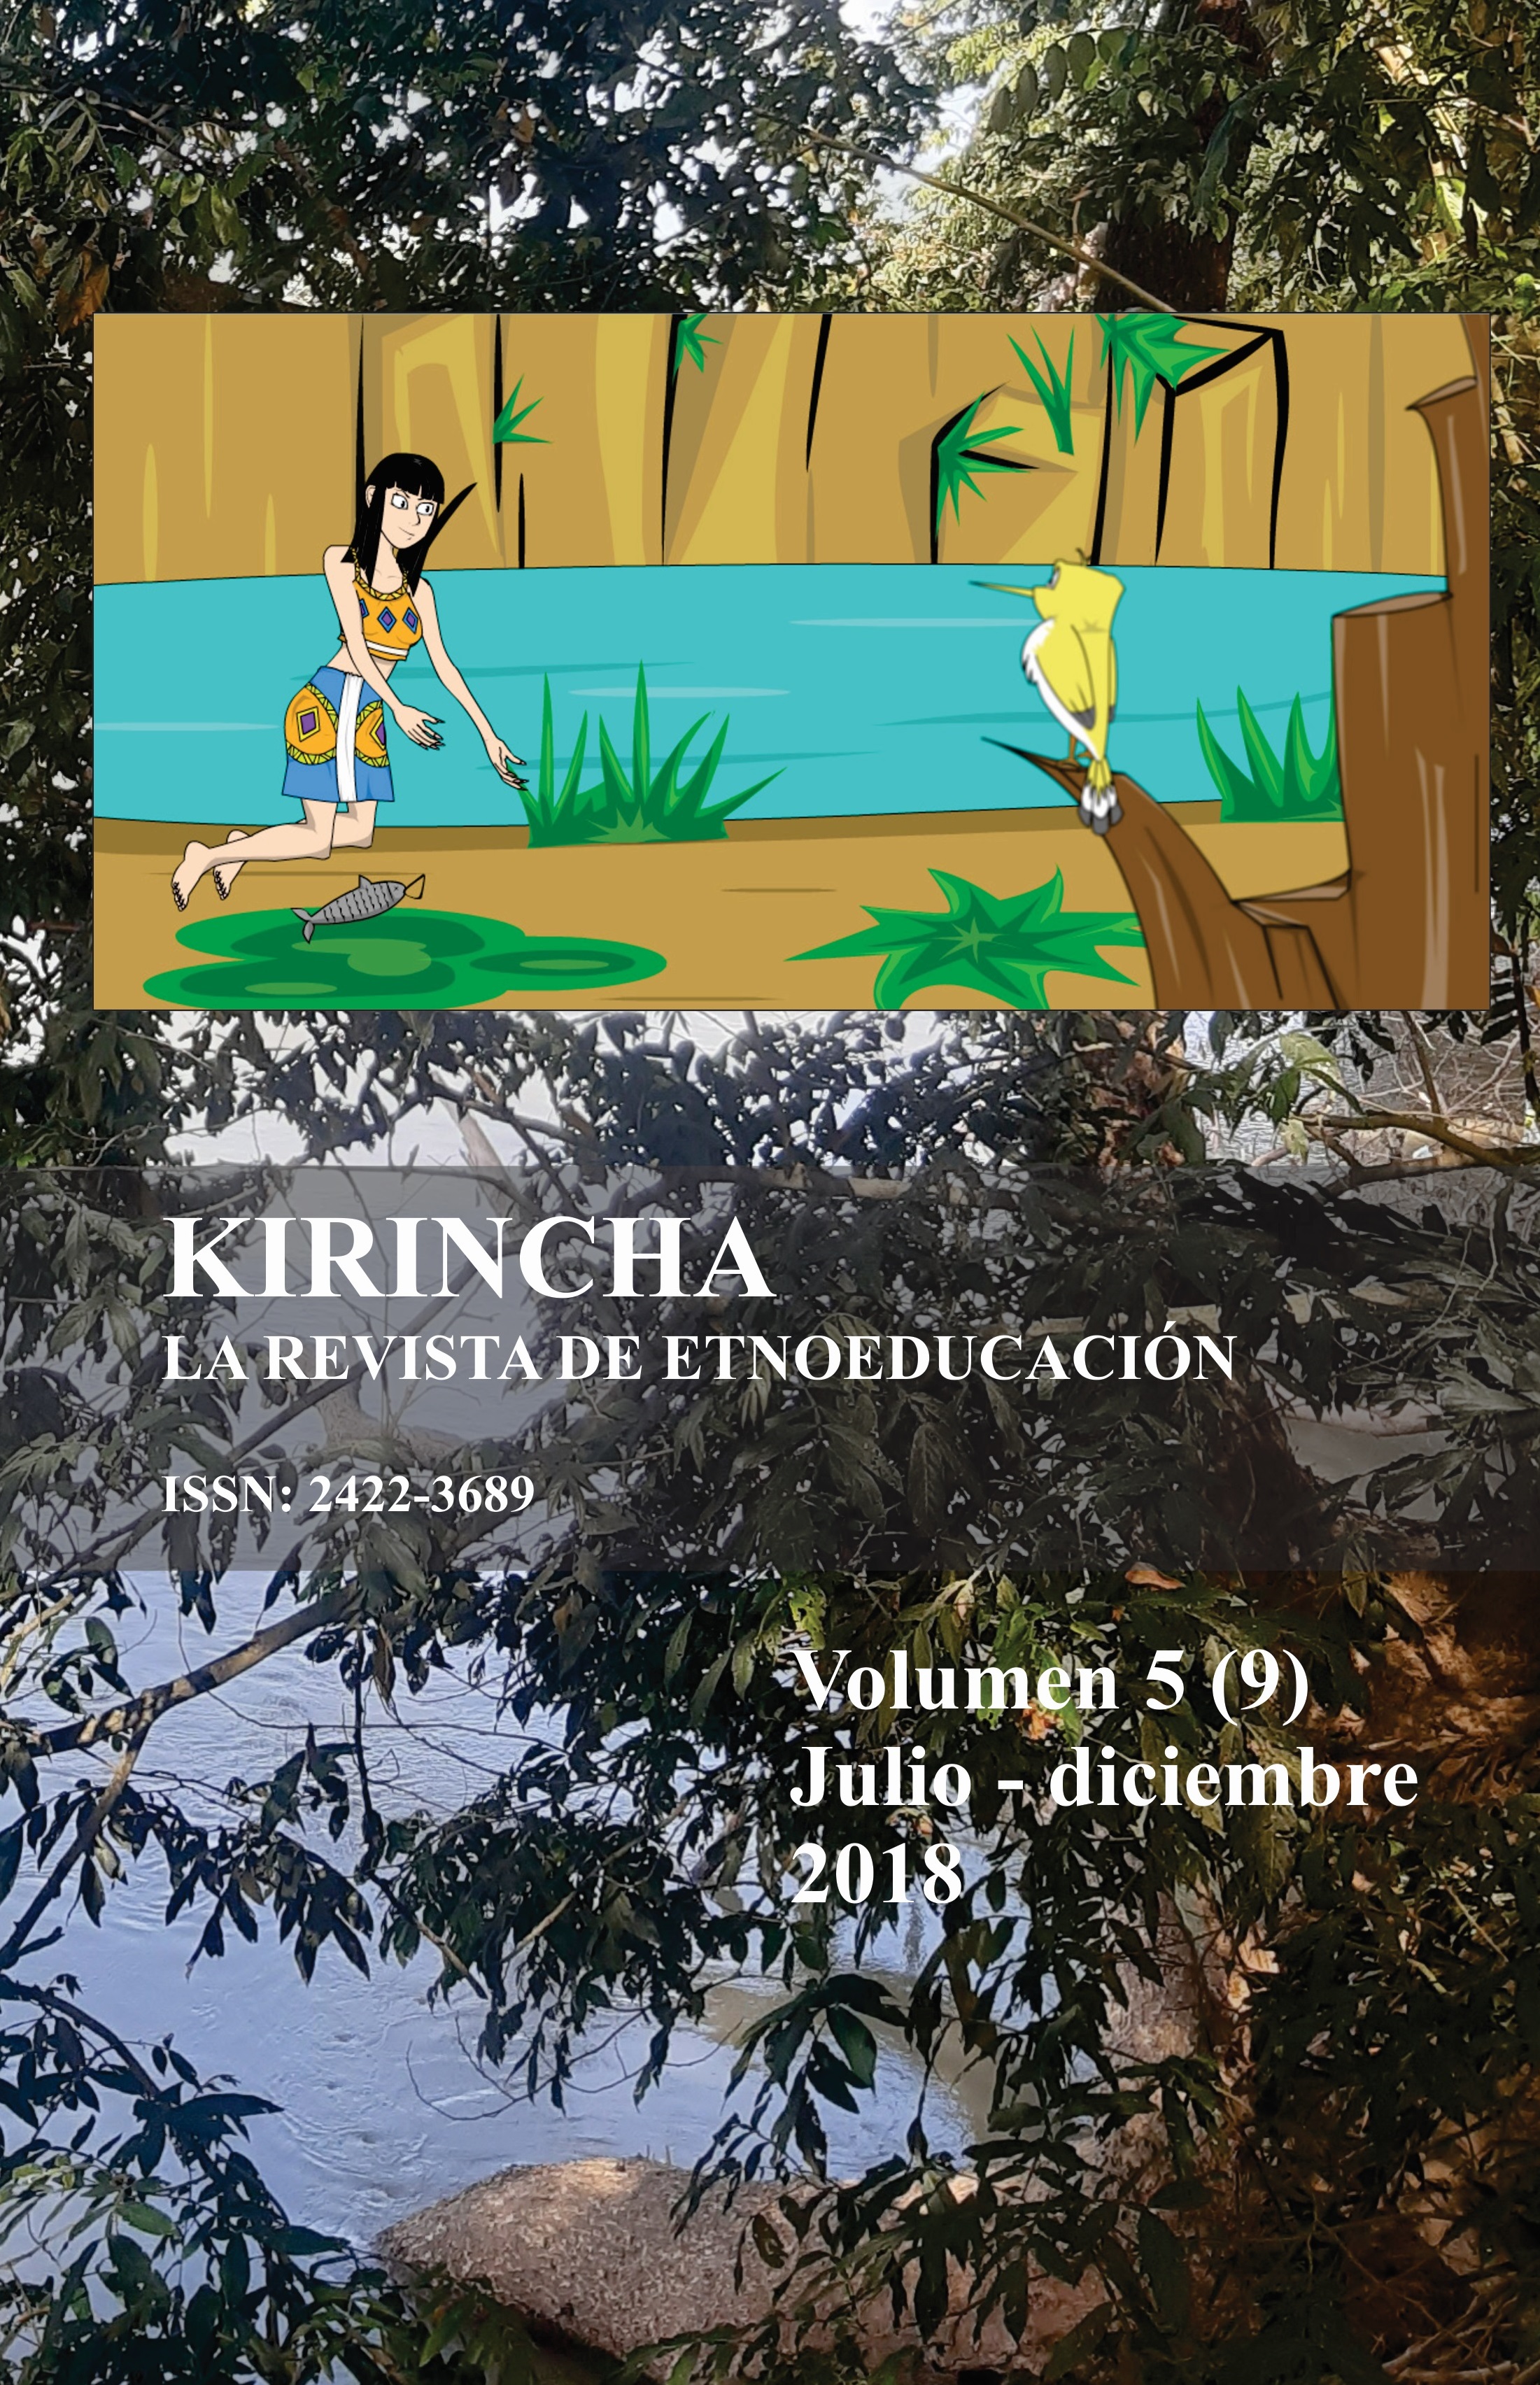 Kirincha 4(9): La revista de etnoeducación